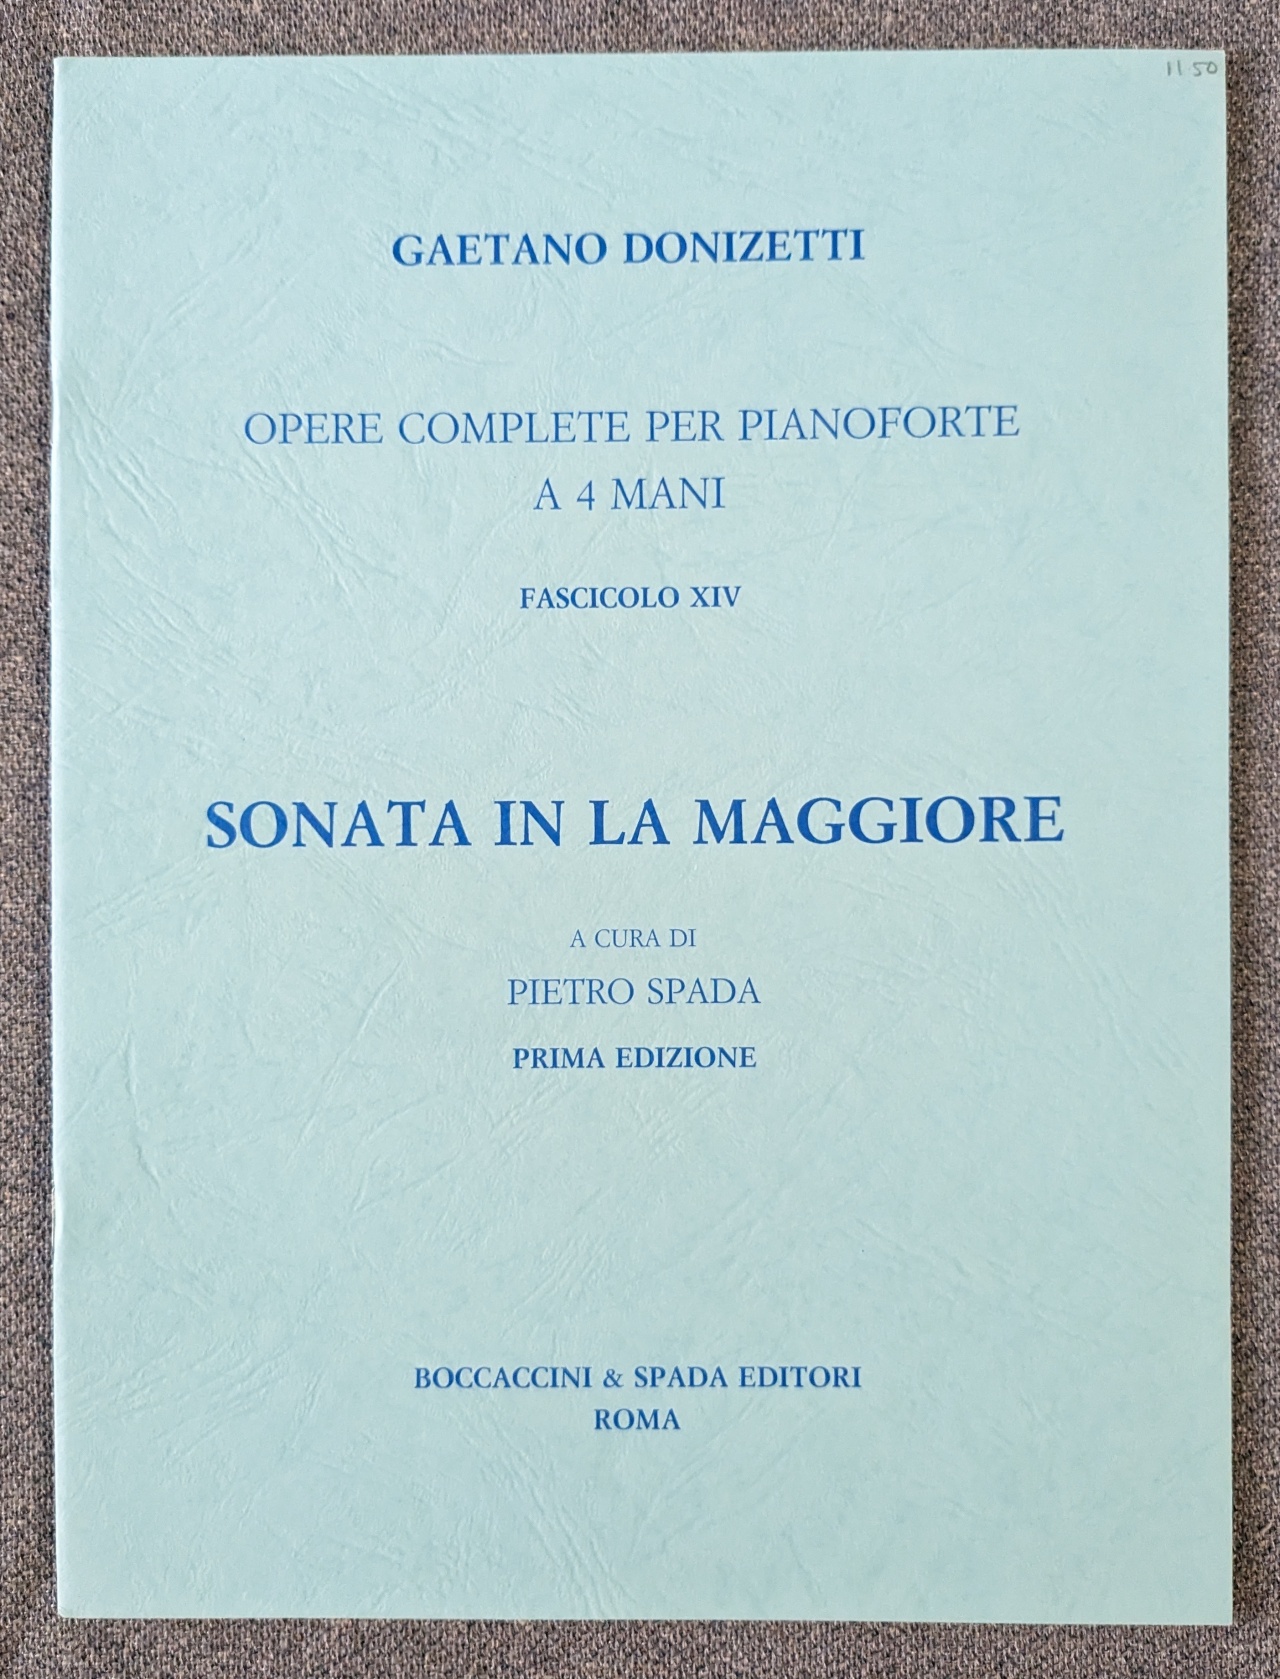 Gaetano Donizetti Symphony In A Major Piano Boccaccini & Spada - Click Image to Close